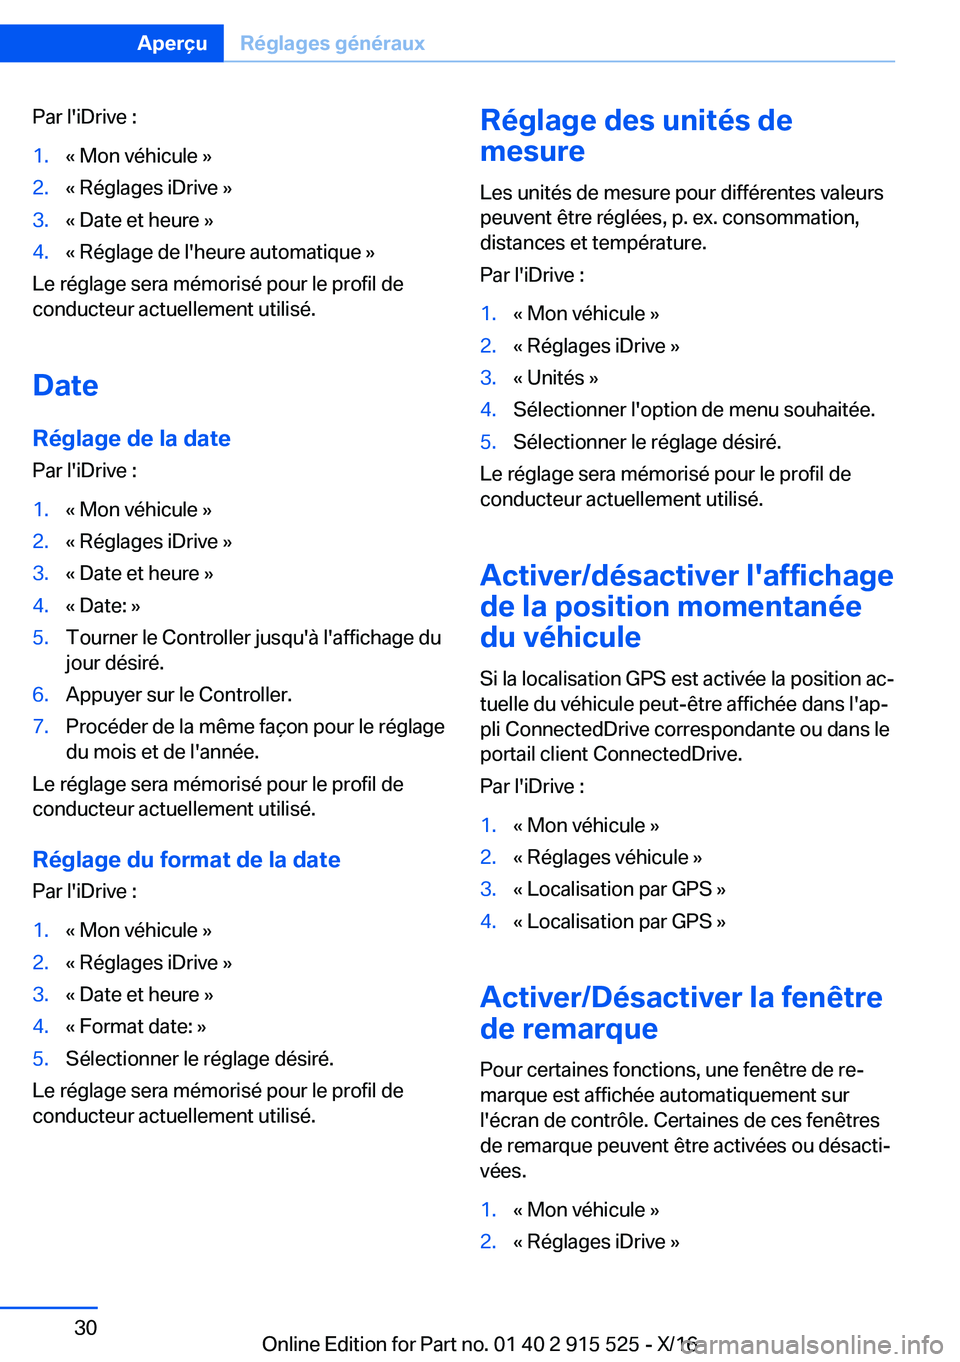 BMW X5 2017  Notices Demploi (in French) �P�a�r� �l�'�i�D�r�i�v�e� �:�1�.�k� �M�o�n� �v�é�h�i�c�u�l�e� �{�2�.�k� �R�é�g�l�a�g�e�s� �i�D�r�i�v�e� �{�3�.�k� �D�a�t�e� �e�t� �h�e�u�r�e� �{�4�.�k� �R�é�g�l�a�g�e� �d�e� �l�'�h�e�u�r�e�